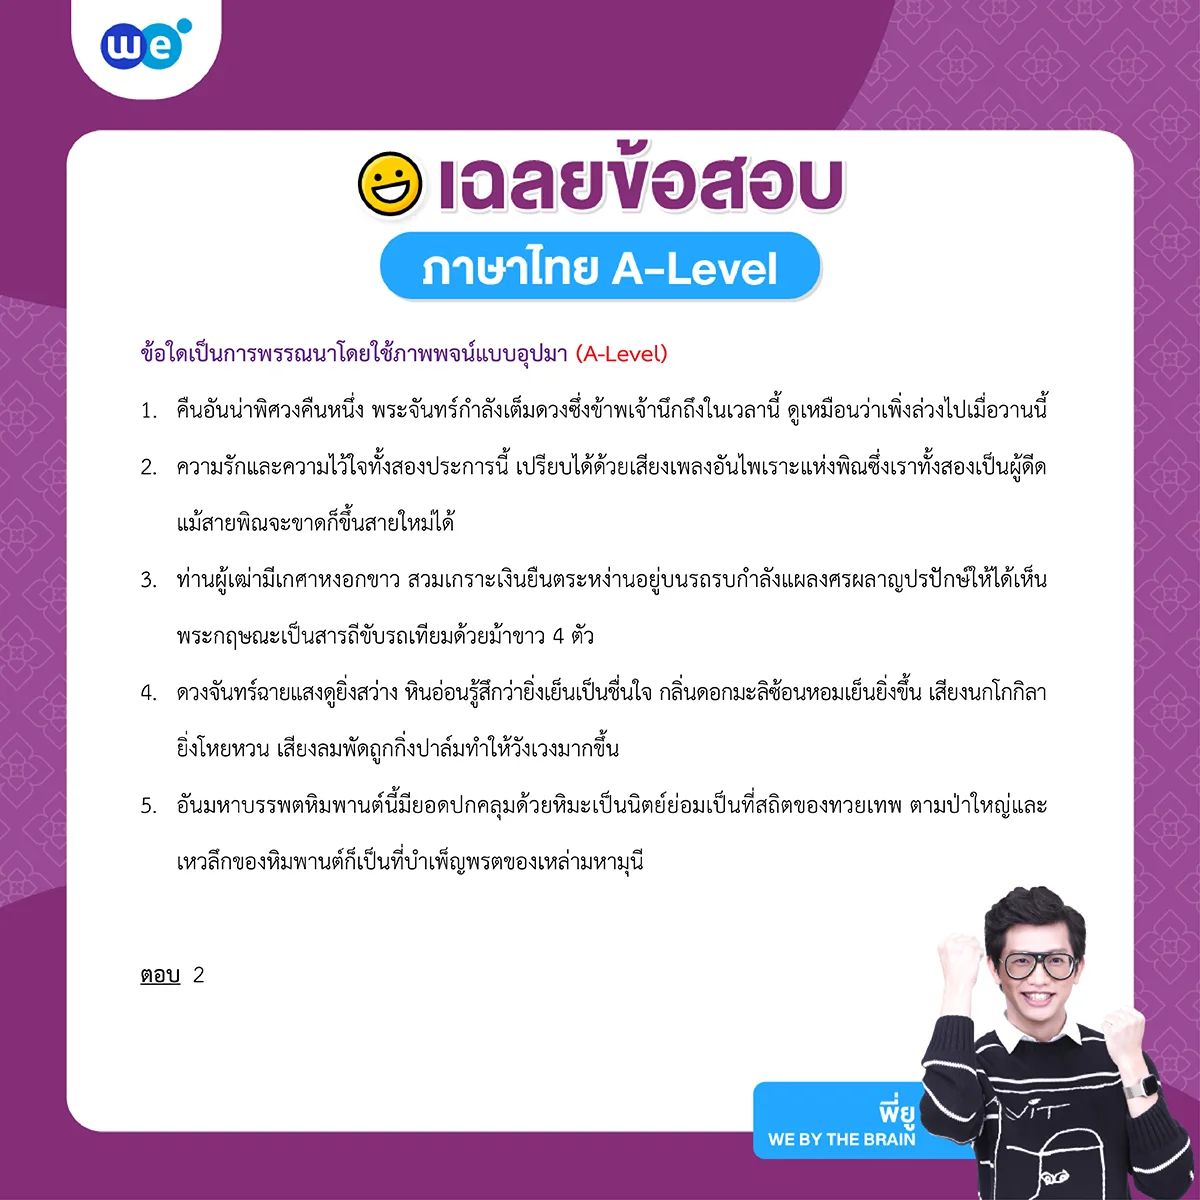 ตัวอย่างข้อสอบวิชาภาษาไทย
